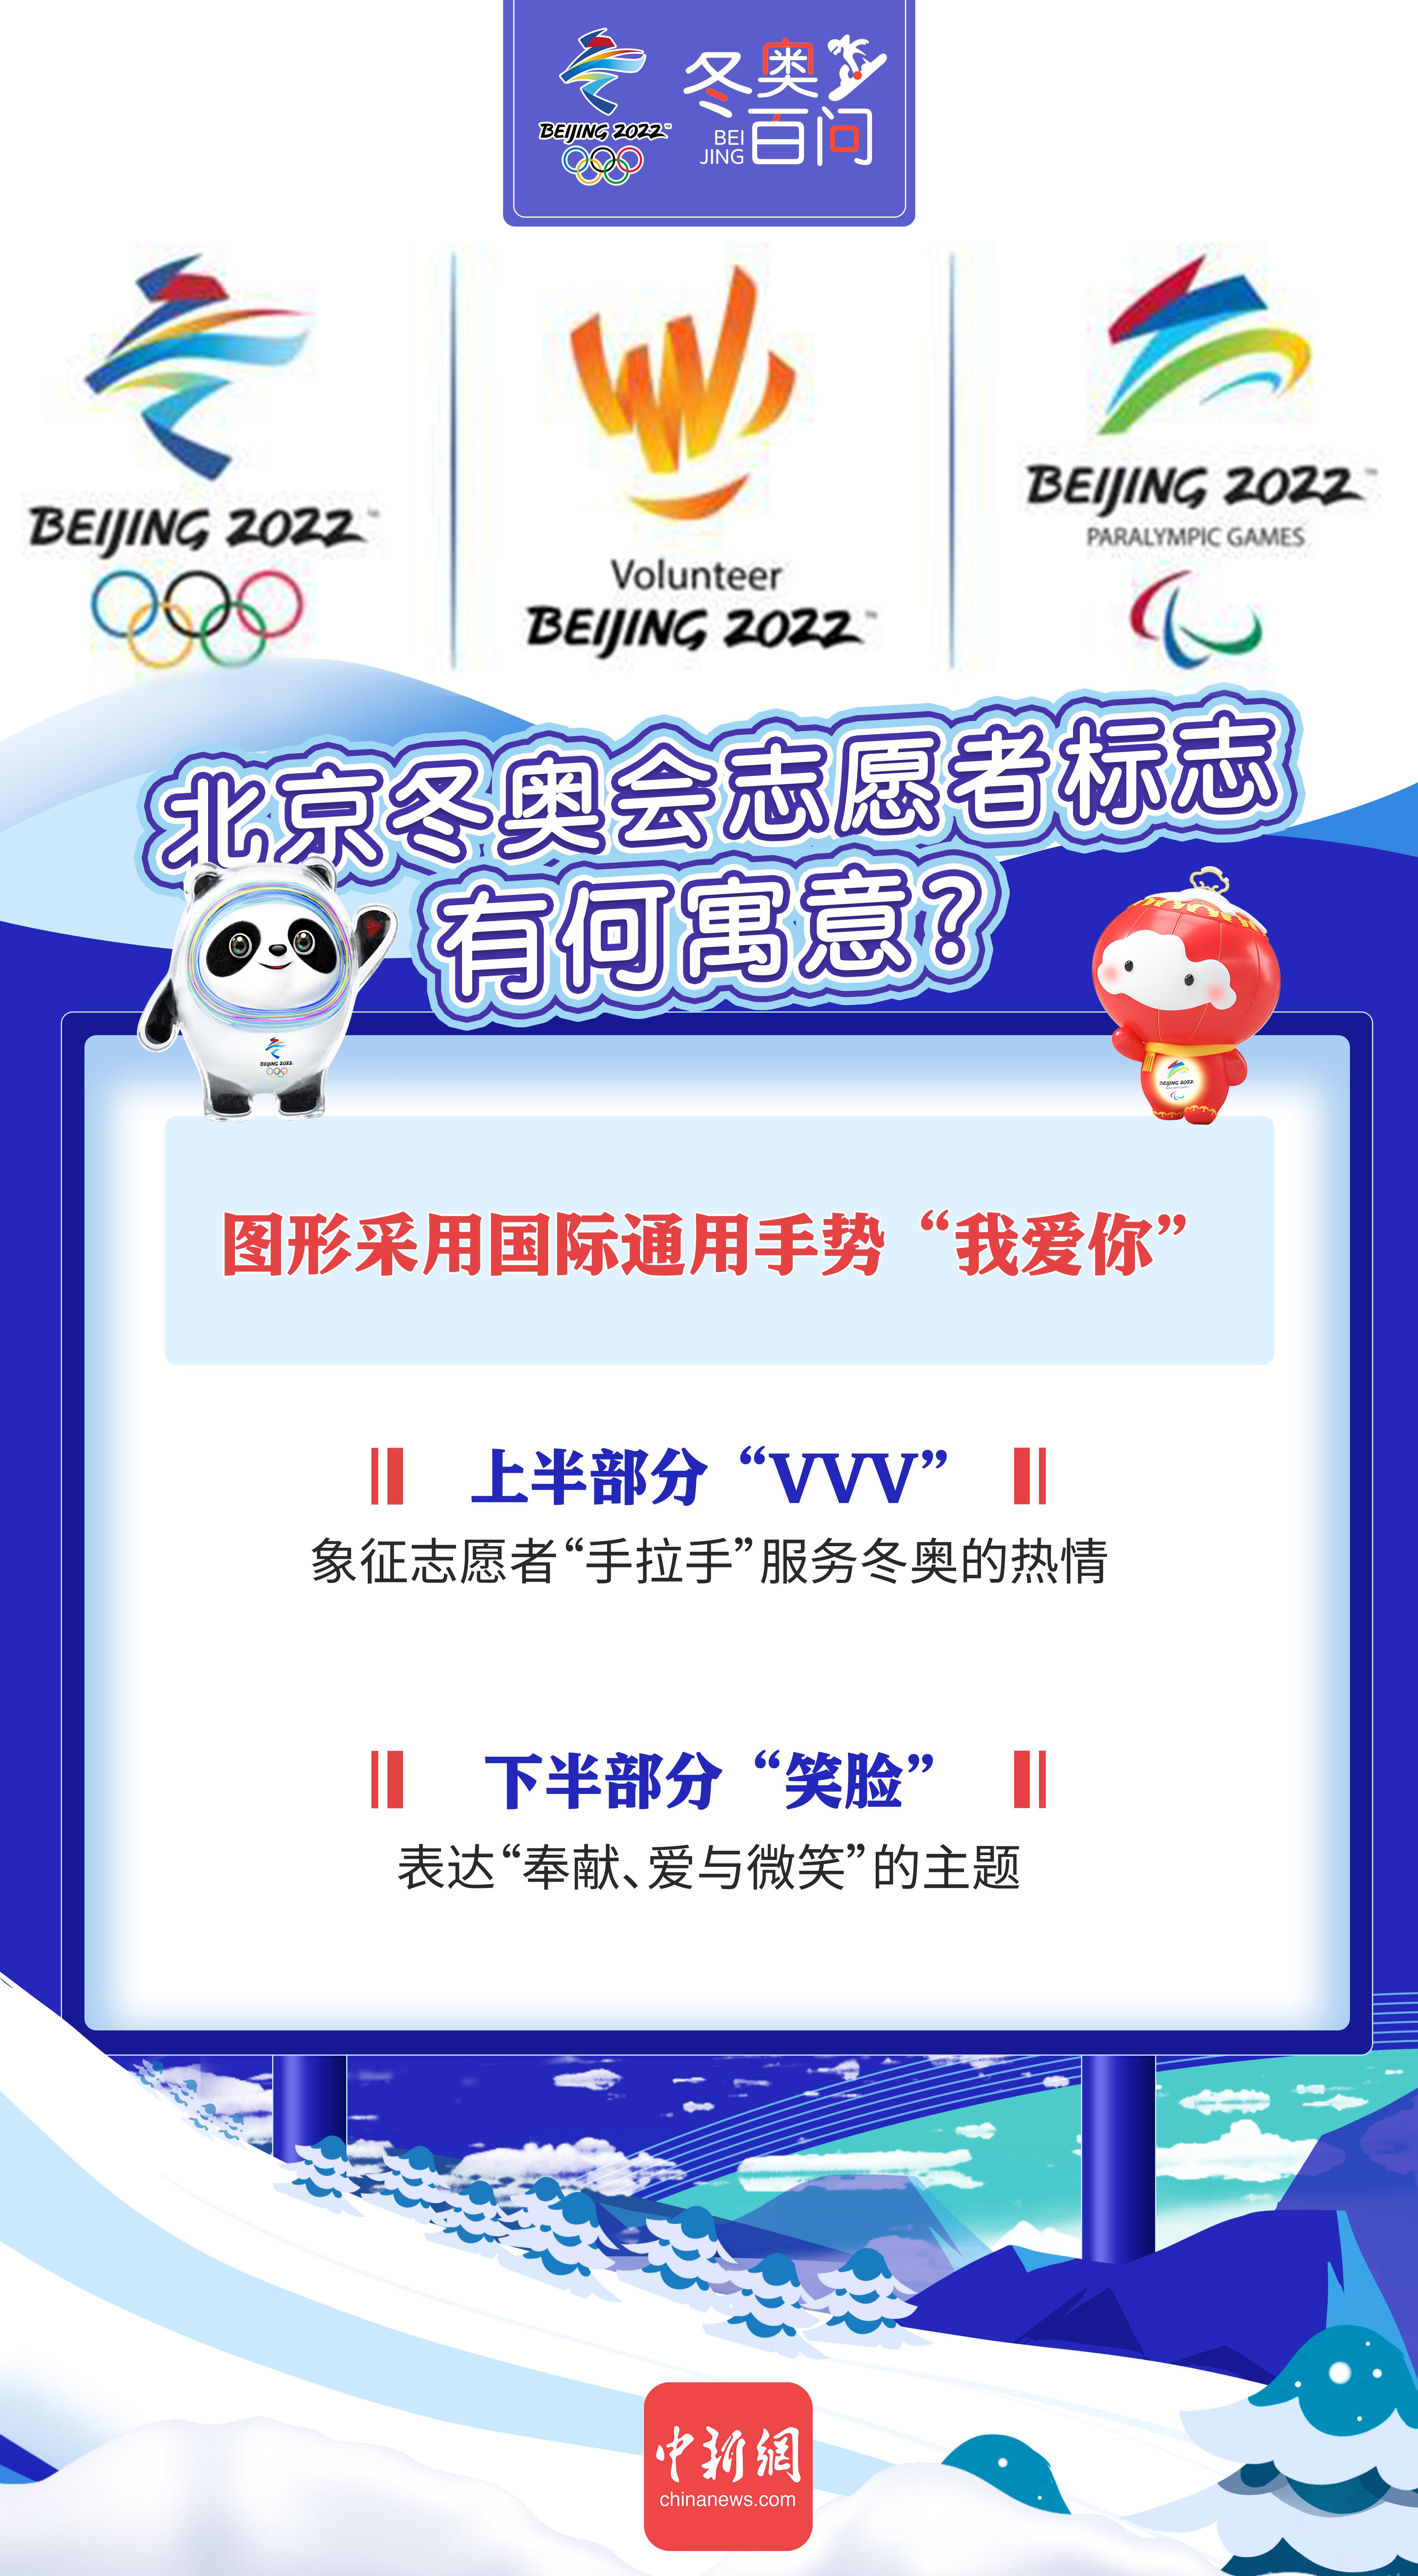 北京冬奥会志愿者标志有何寓意